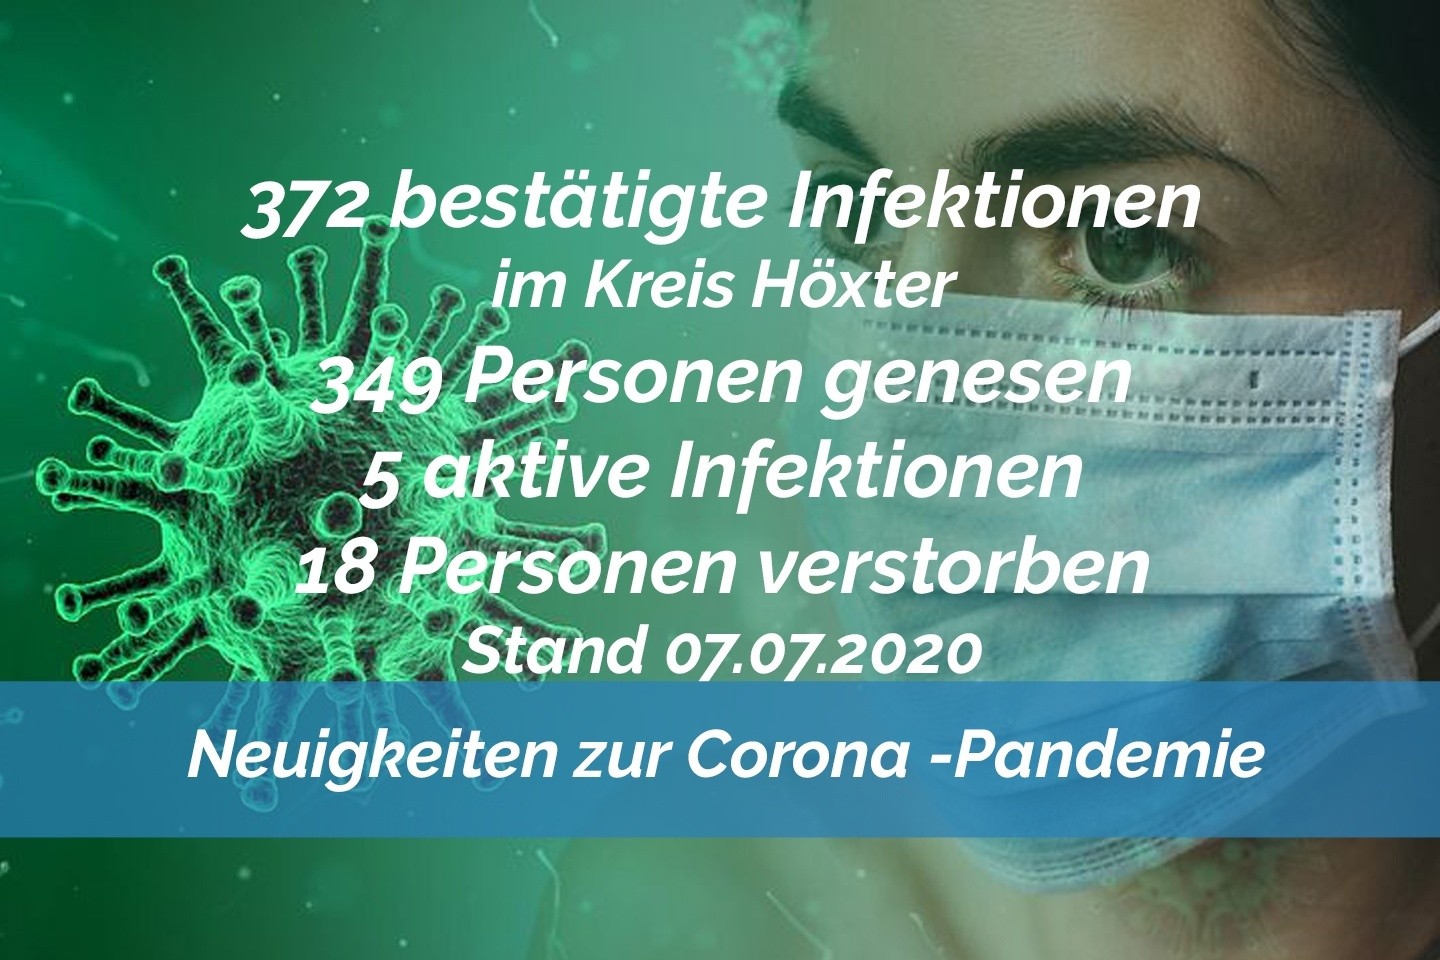 Update vom 07. Juli: 372 bestätigte Infektionen mit dem neuen Coronavirus im Kreis Höxter